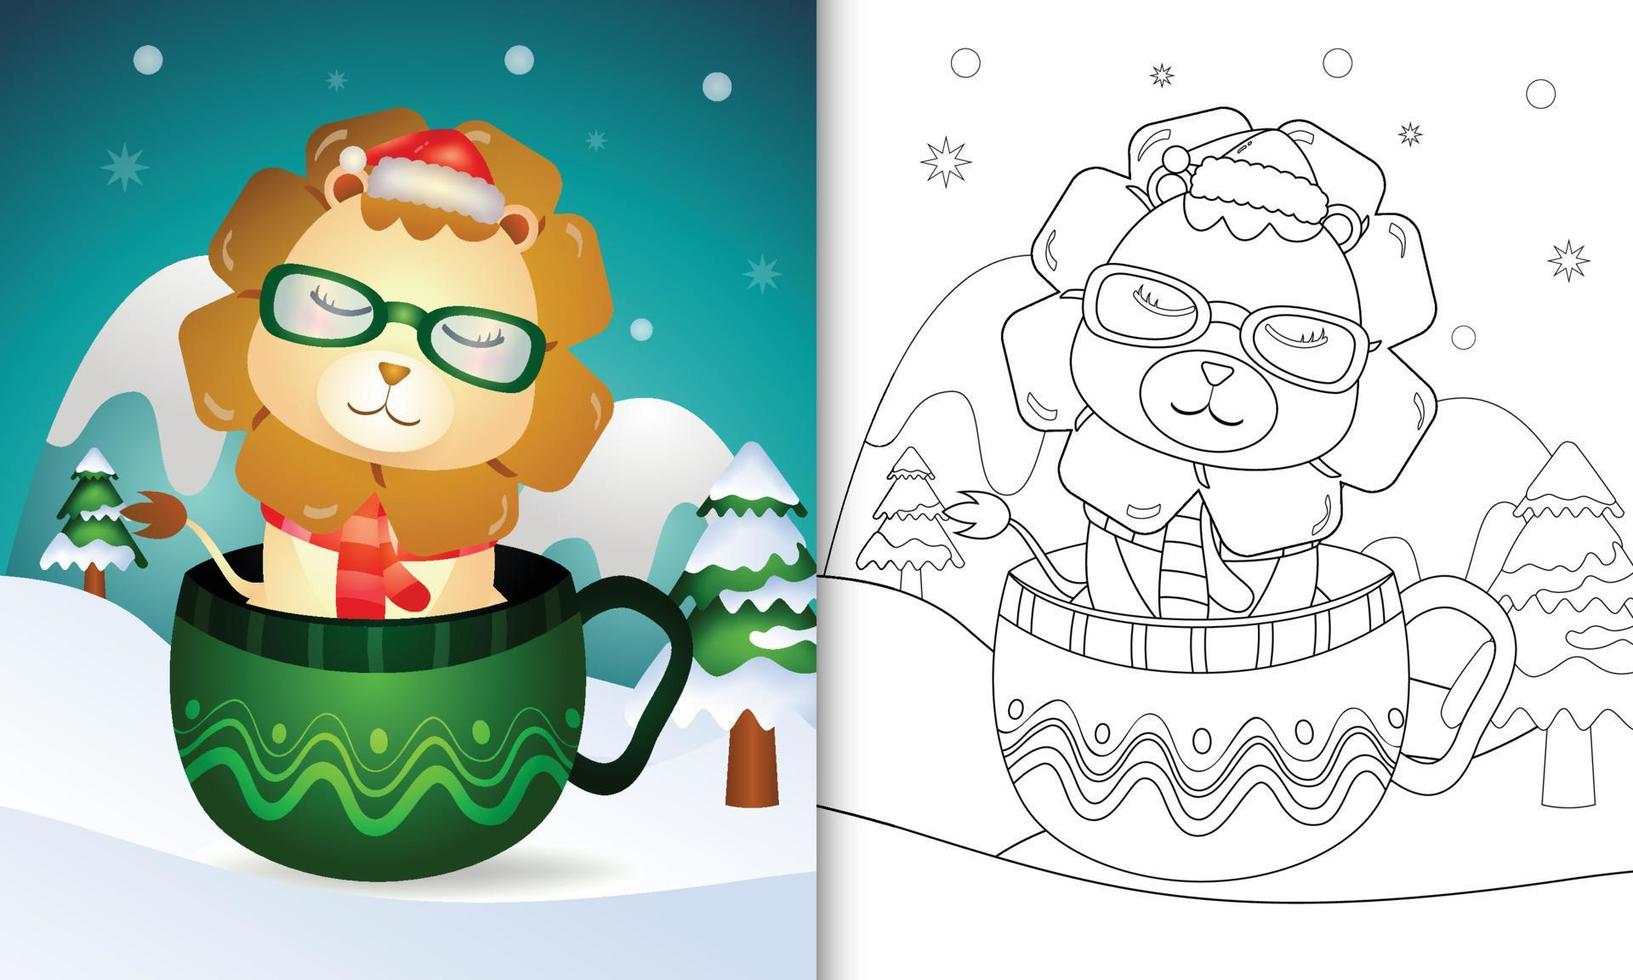 livro de colorir com personagens de natal de um leão fofo com um chapéu de papai noel e cachecol no copo vetor